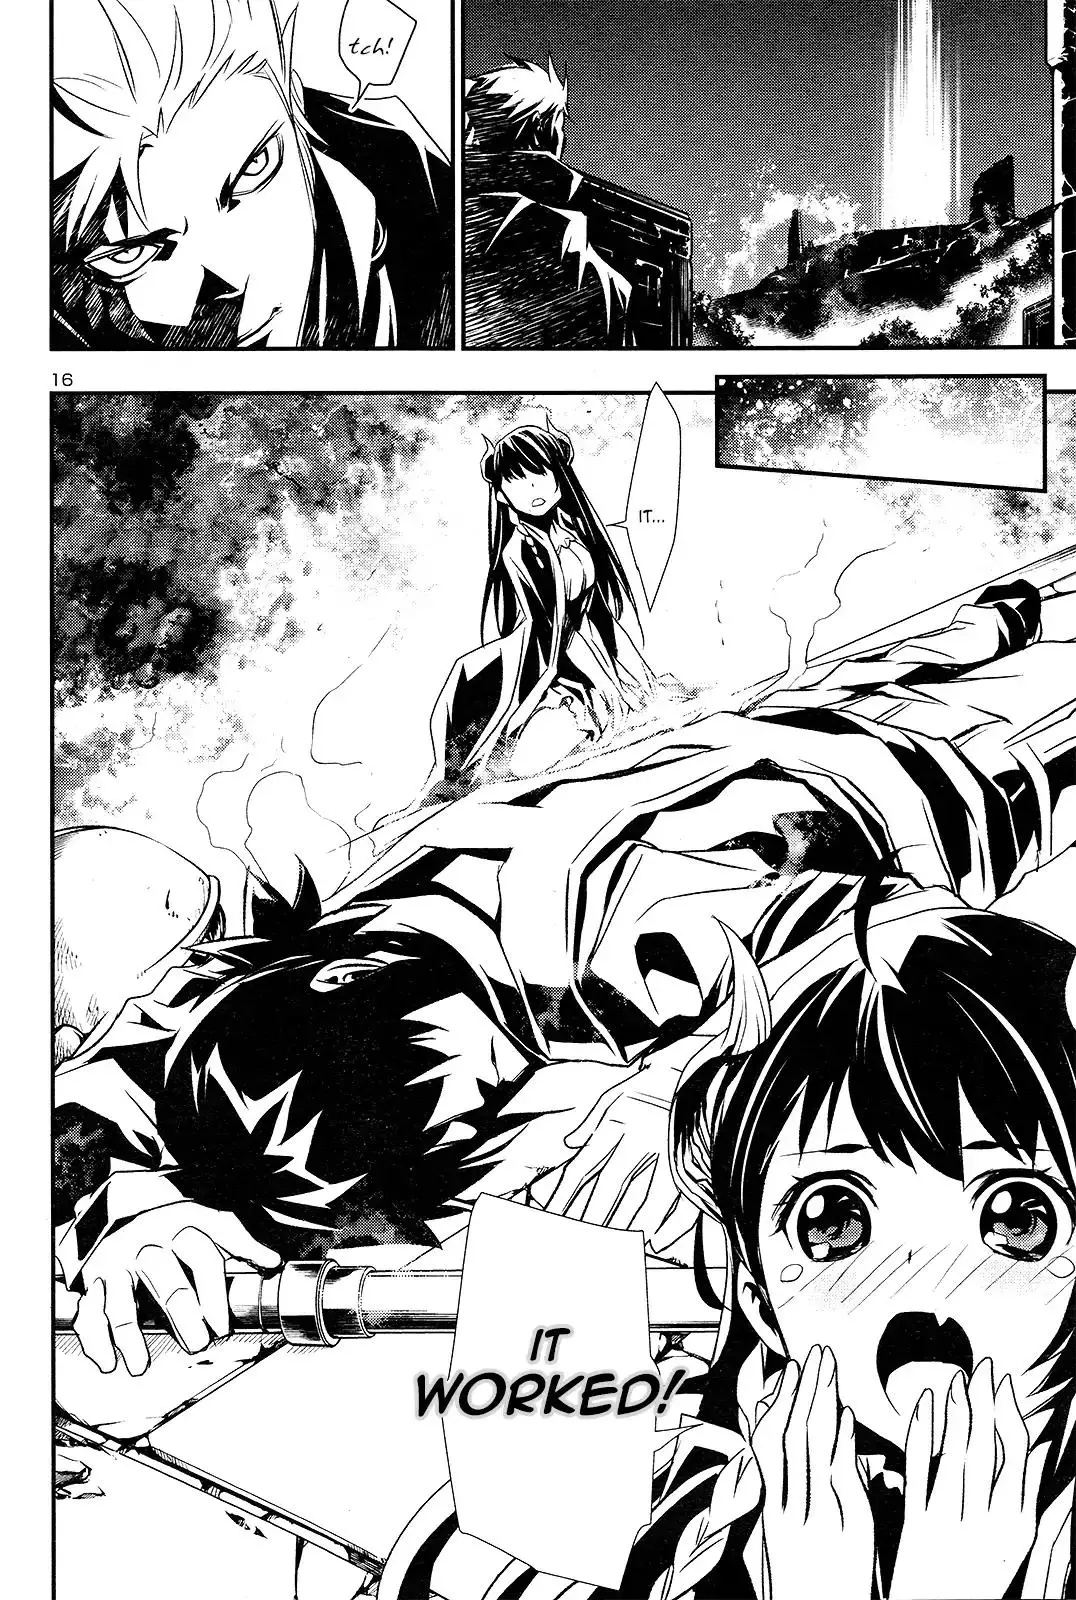 Shinju no Nectar - 1 page 16